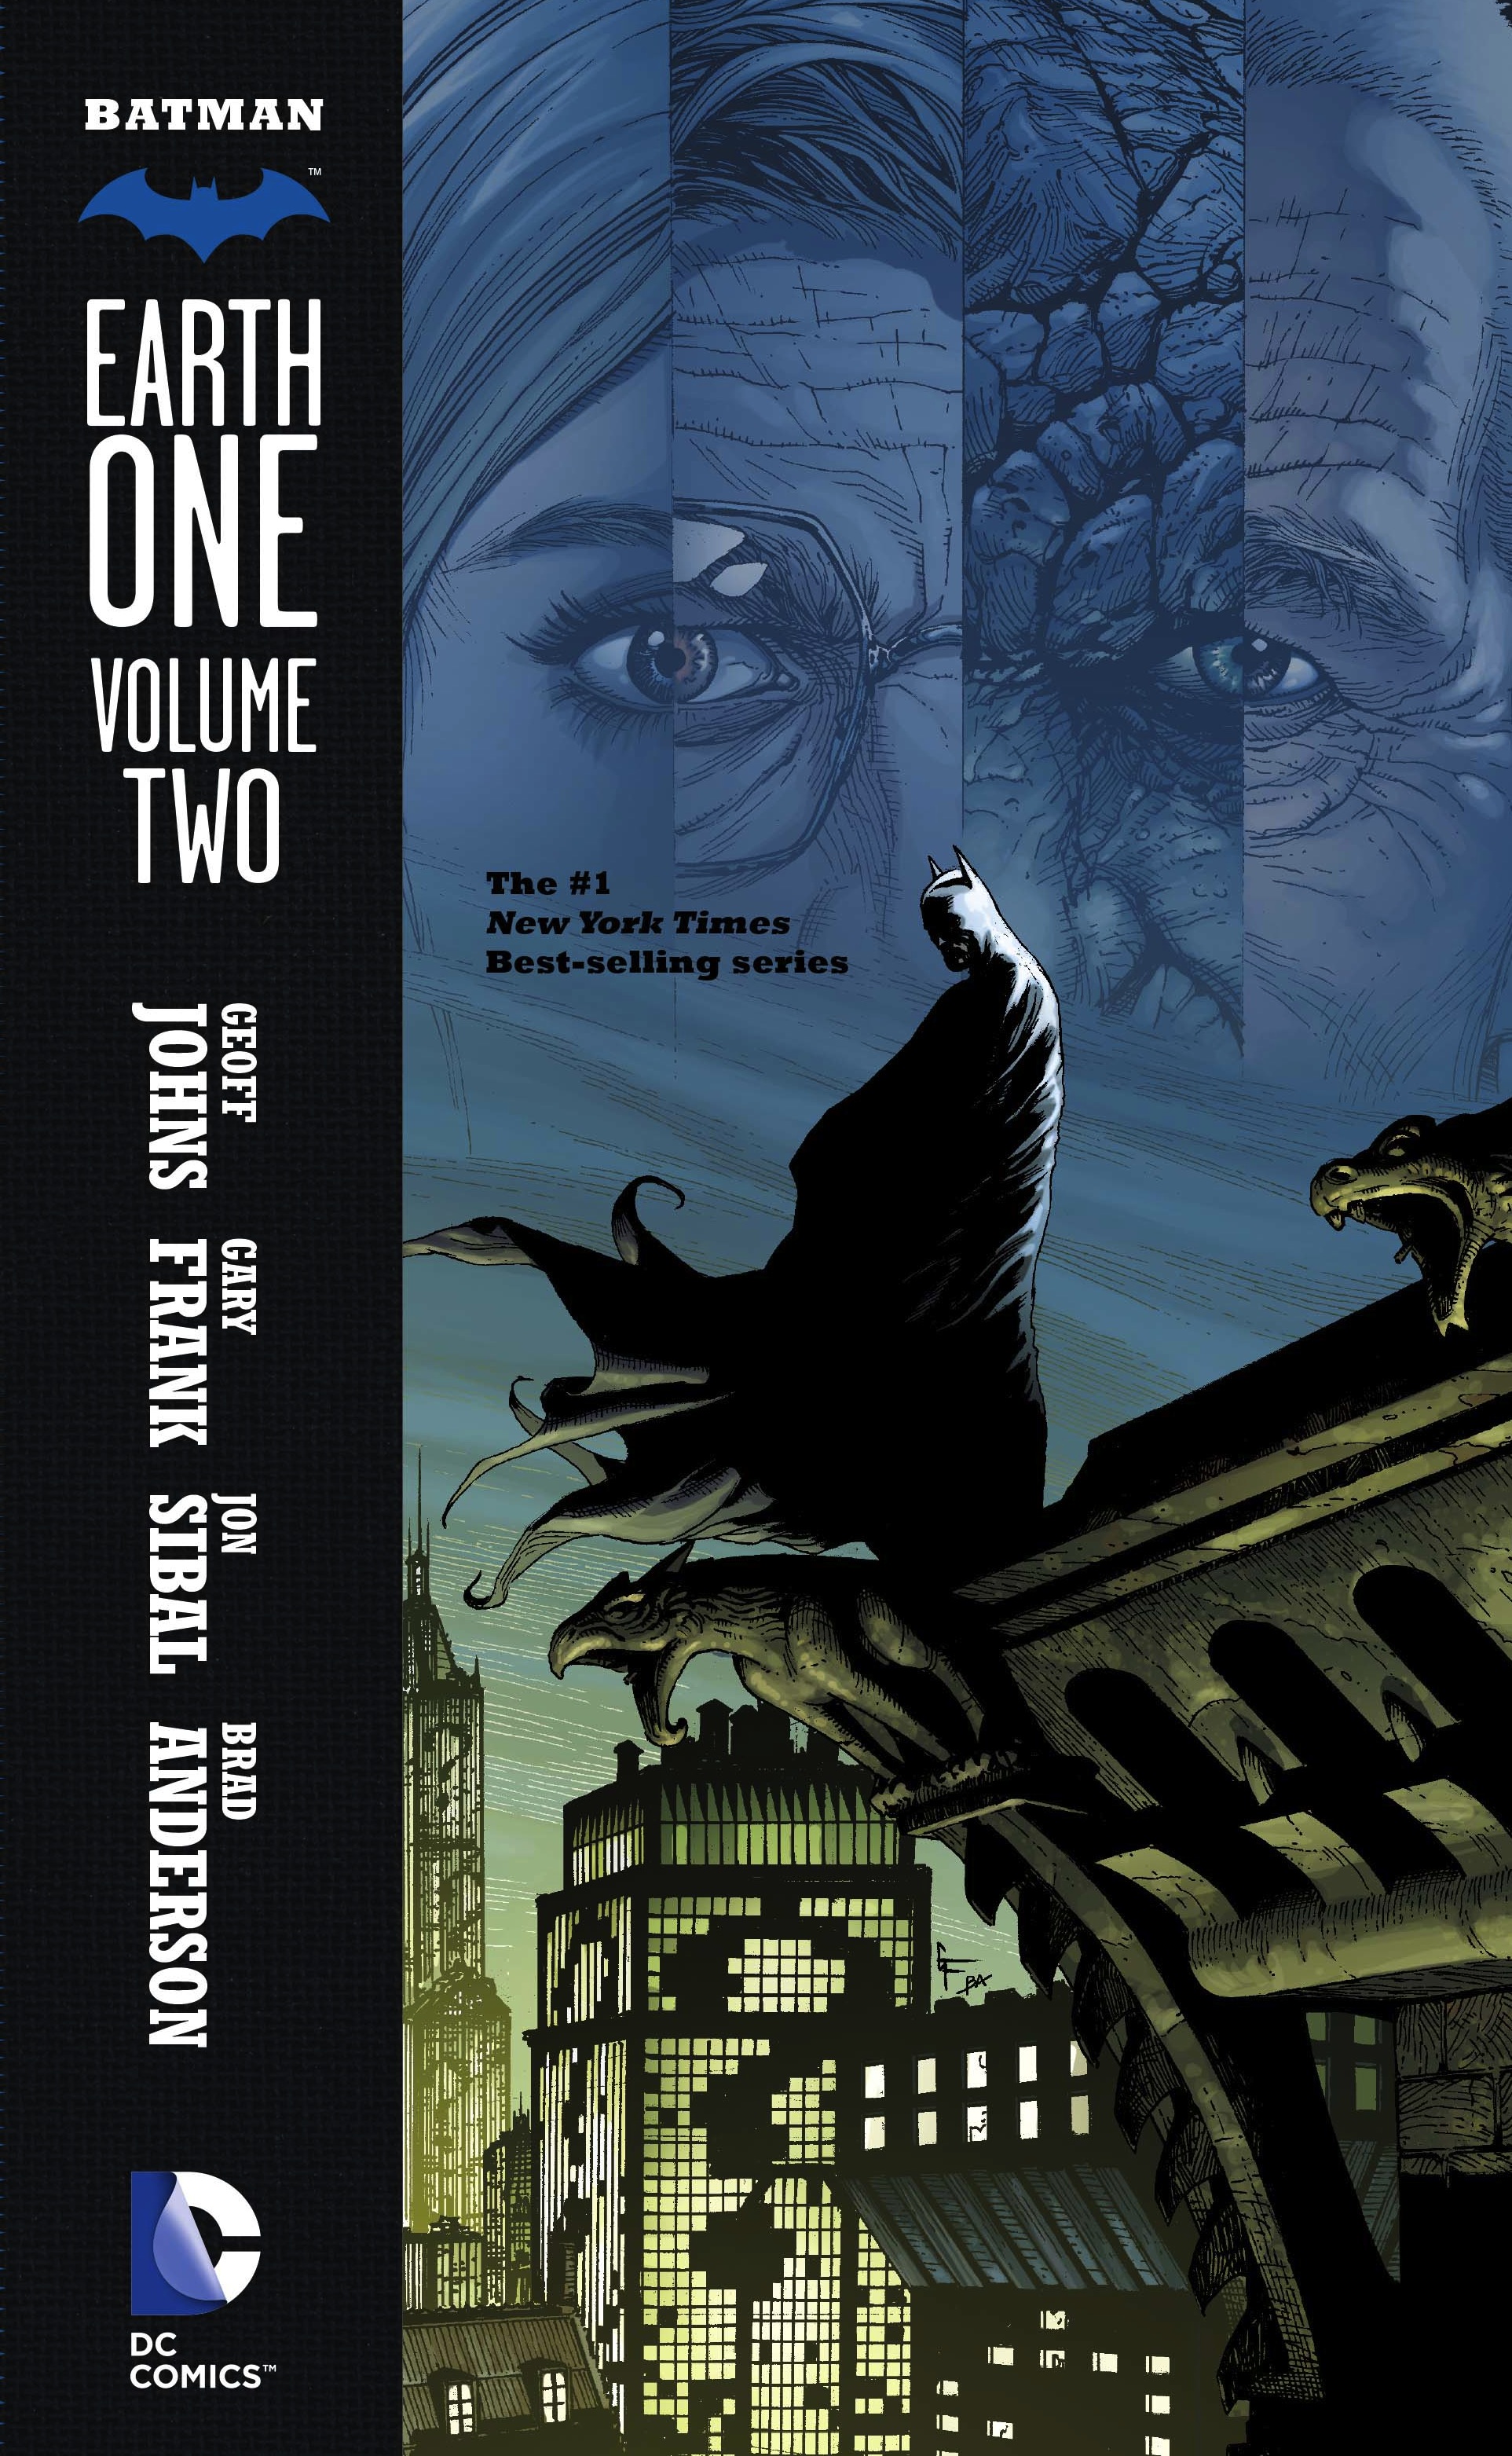 Batman: Earth One, Vol. 2 review | Batman News